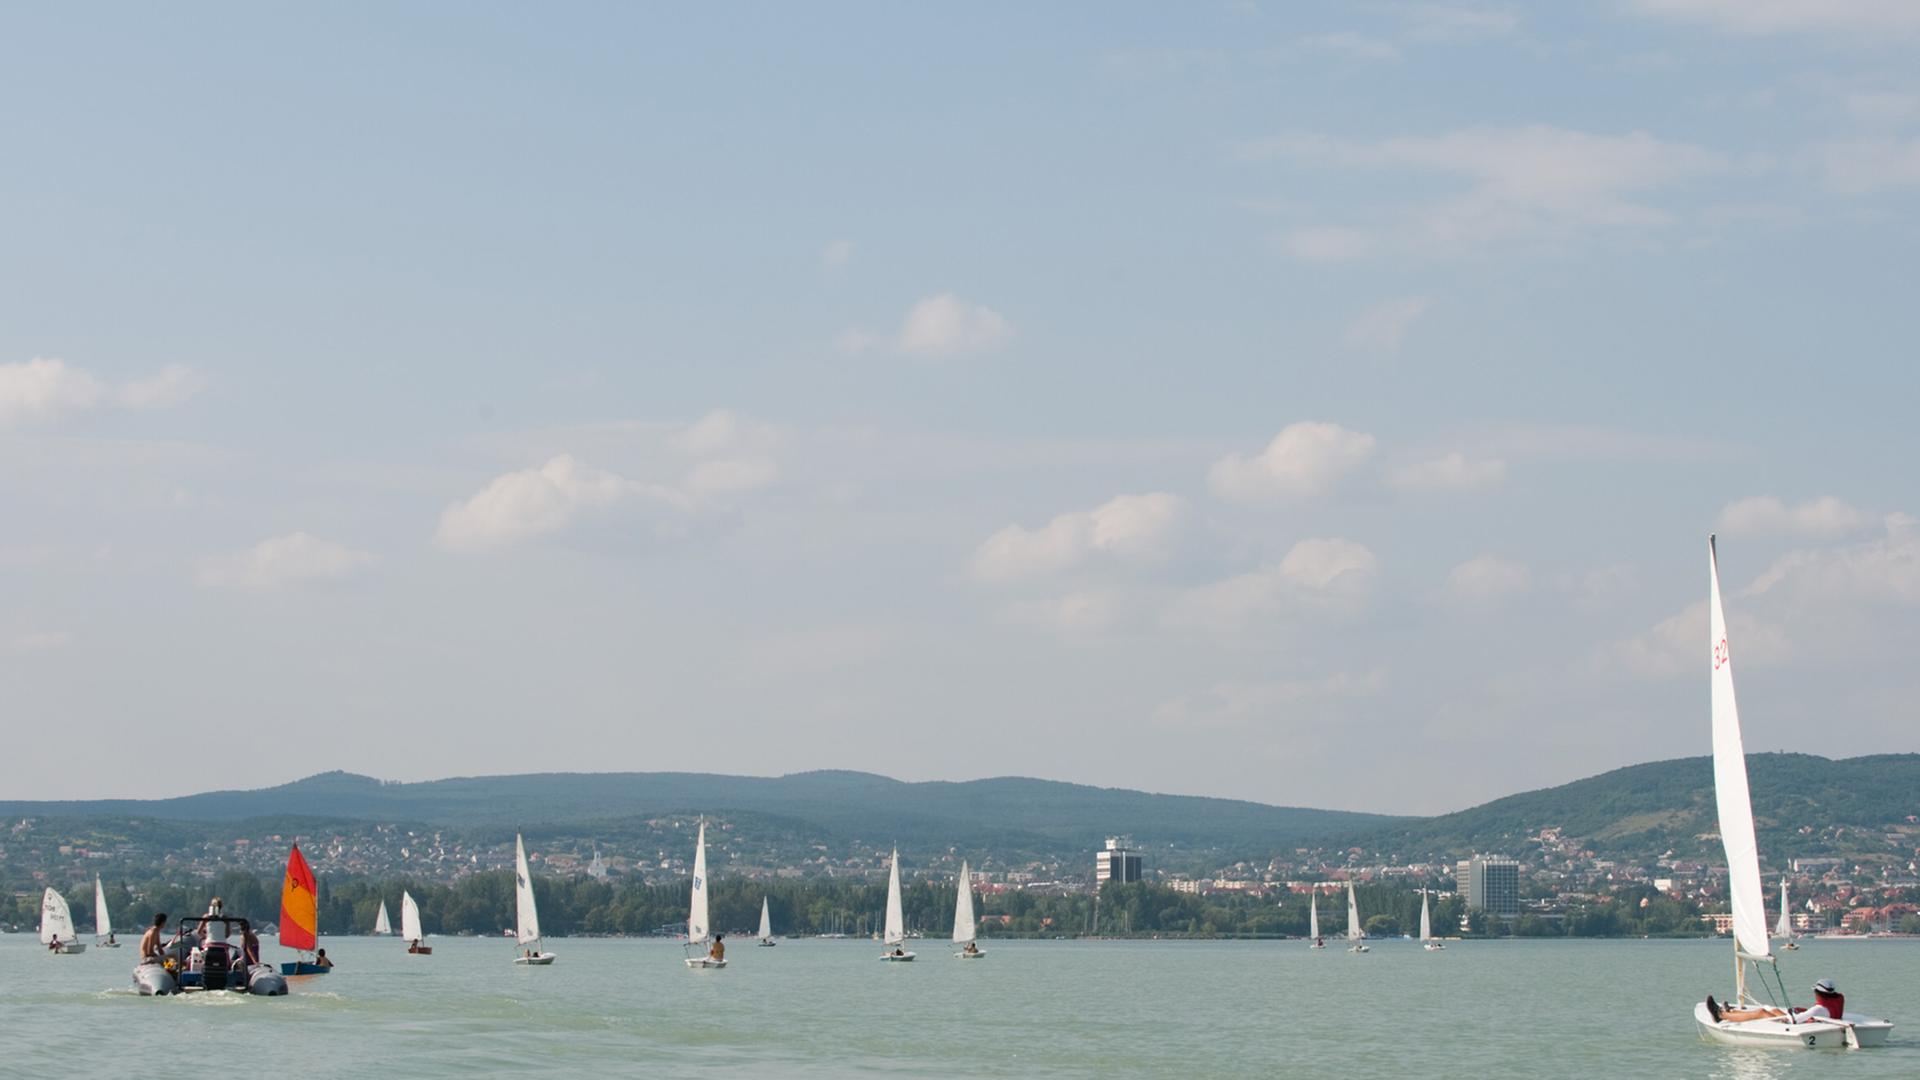 Segelboote auf dem Plattensee bei Budapest in Ungarn